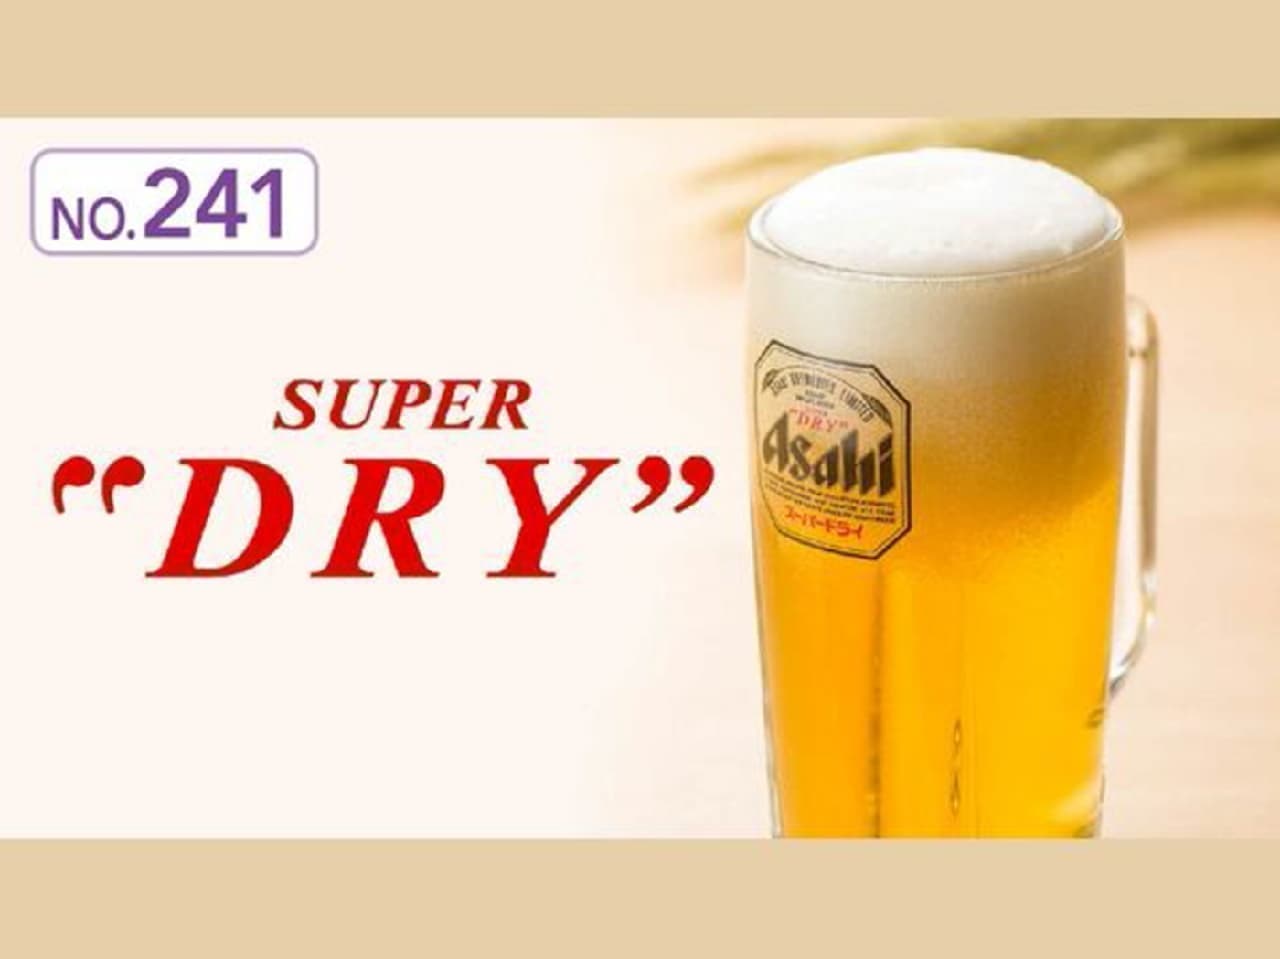 Gusto "Asahi Super Dry (Jockey)